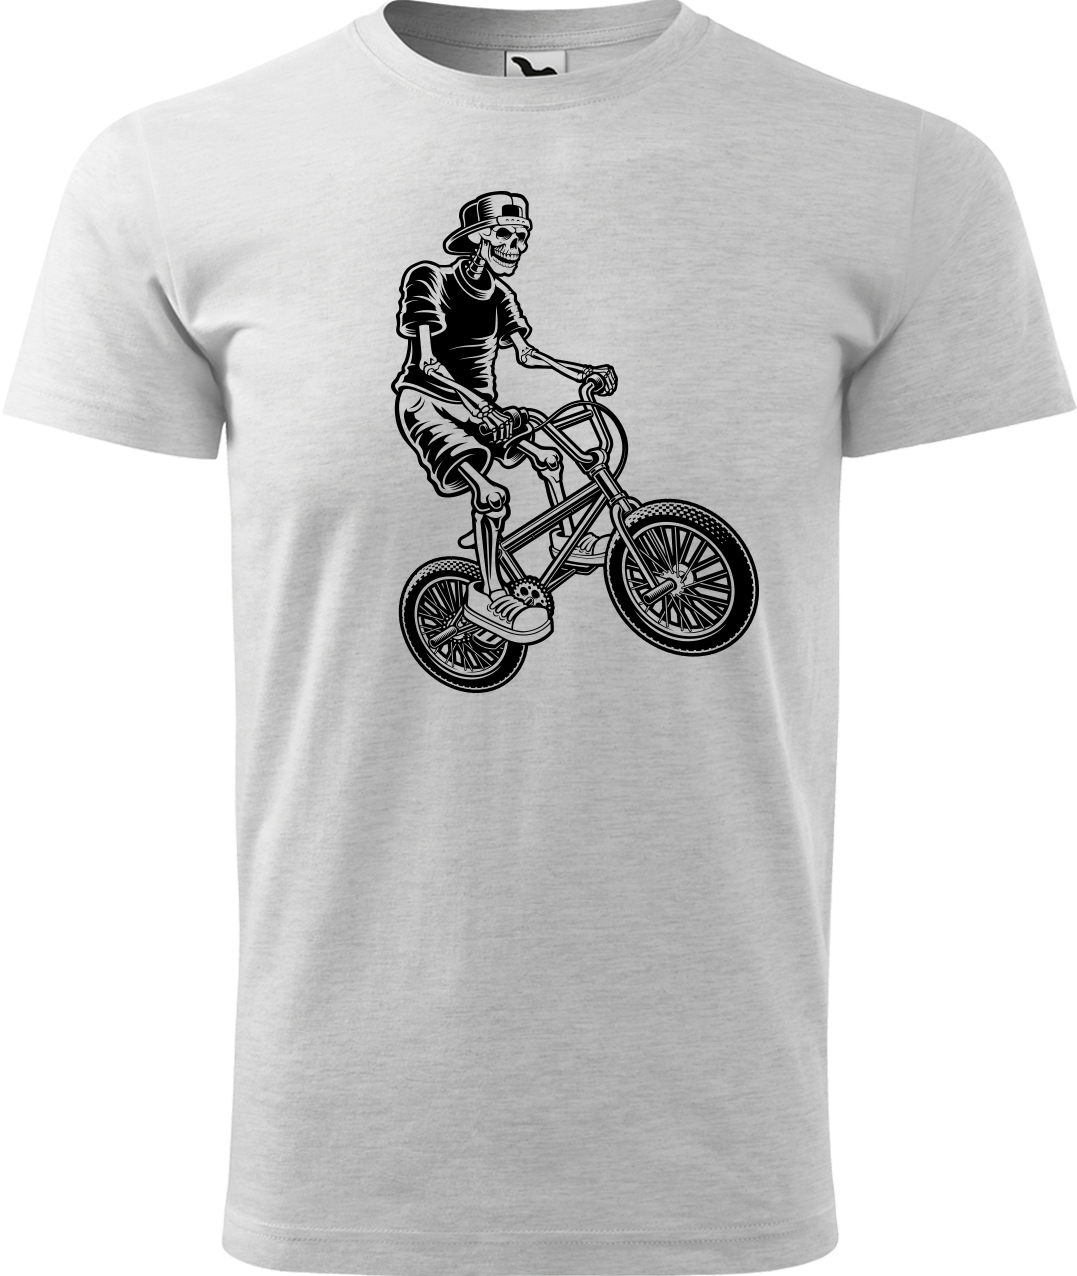 Pánské tričko s kolem - Trial Bike Velikost: M, Barva: Světle šedý melír (03)